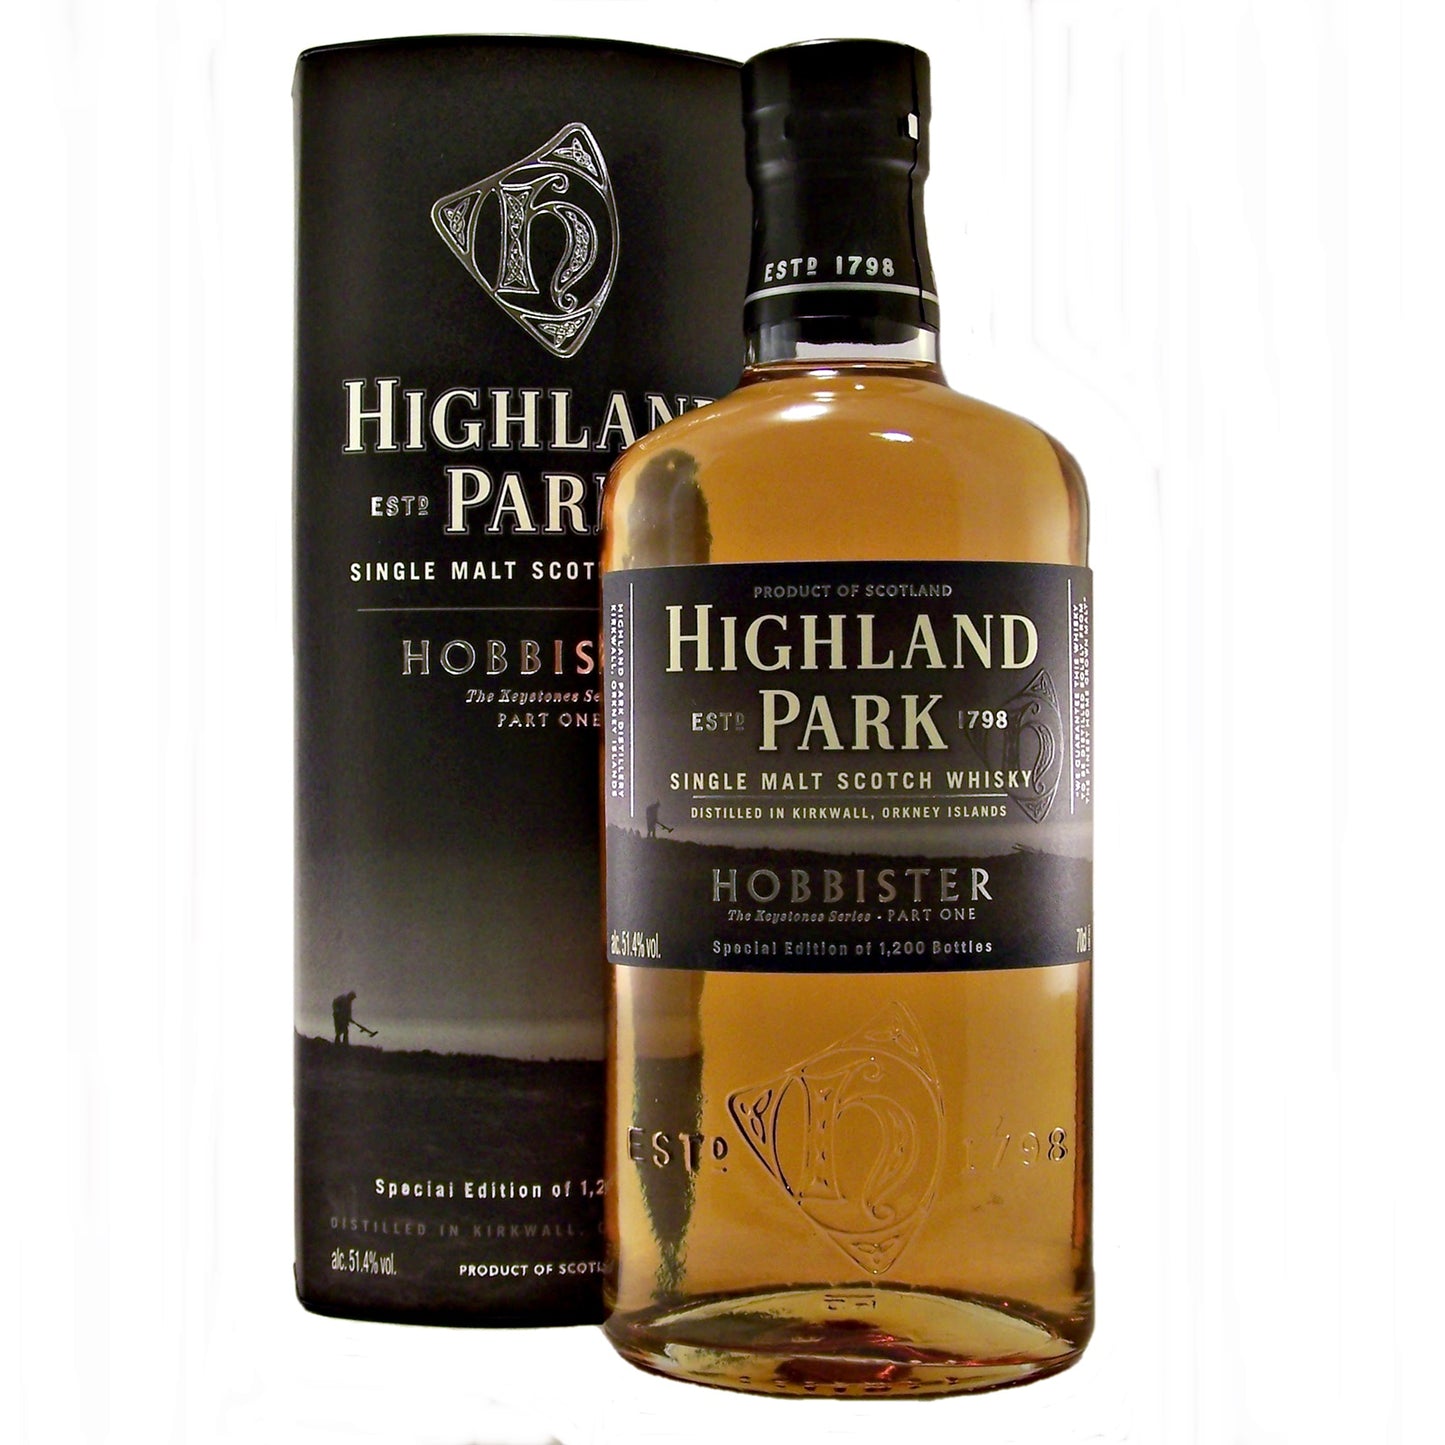 Highland Park Hobbister